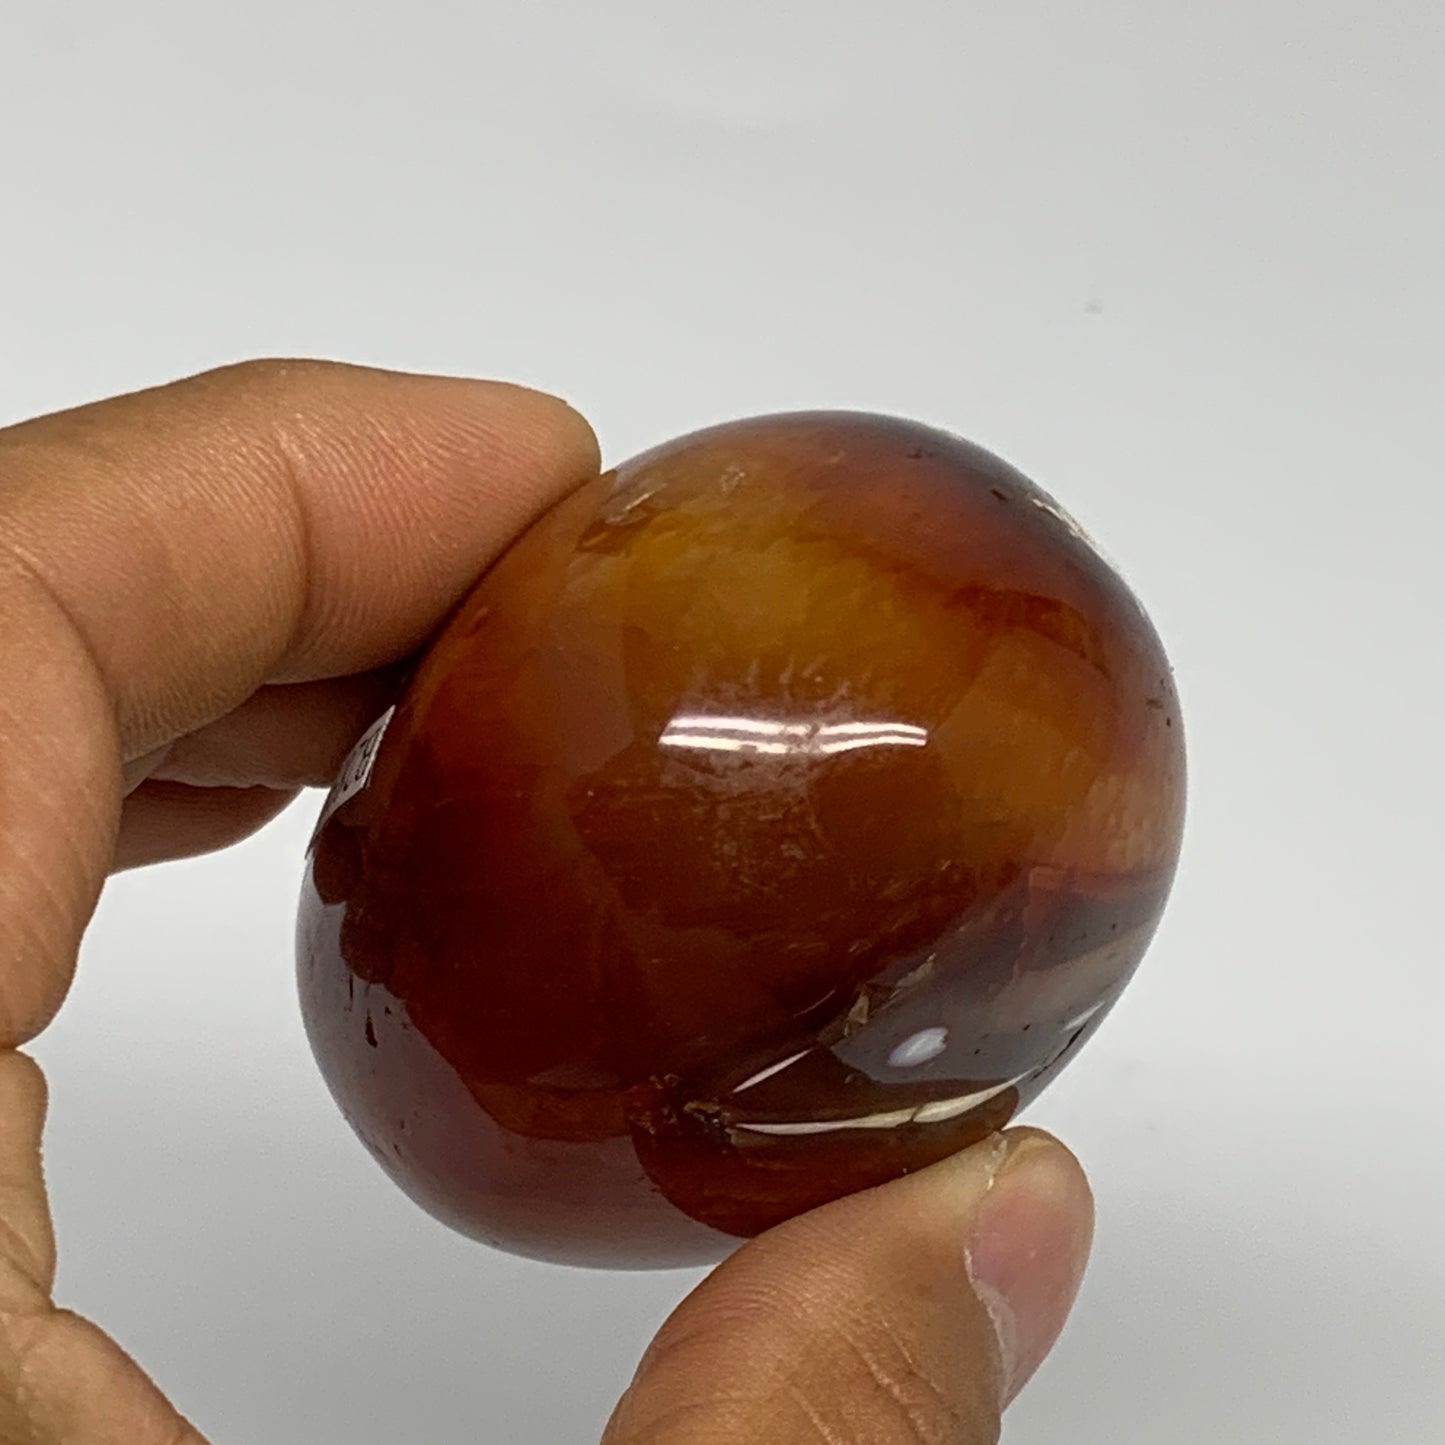 163.9g, 2.5"x1.9"x1.5", Red Carnelian Palm-Stone Gem Crystal Polished, B28397